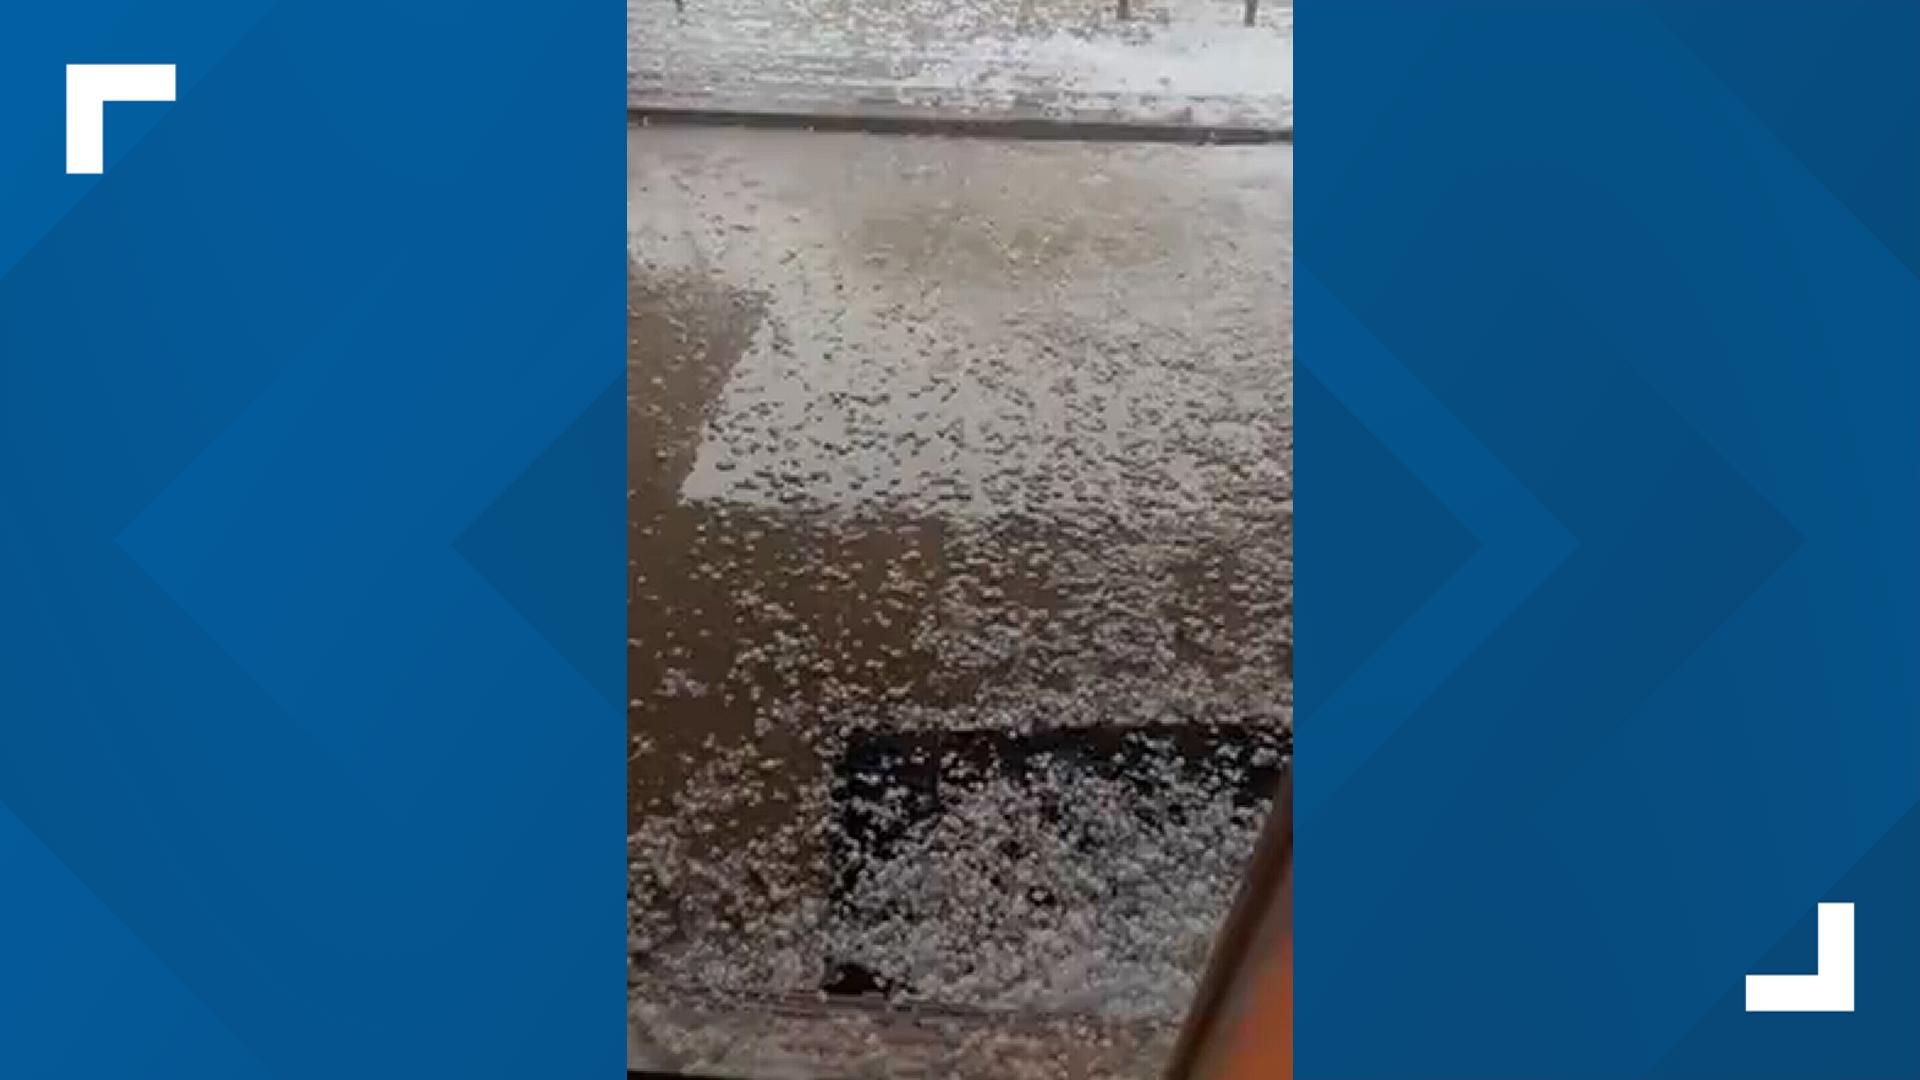 Hail and heavy rain falls in Killeen, Texas